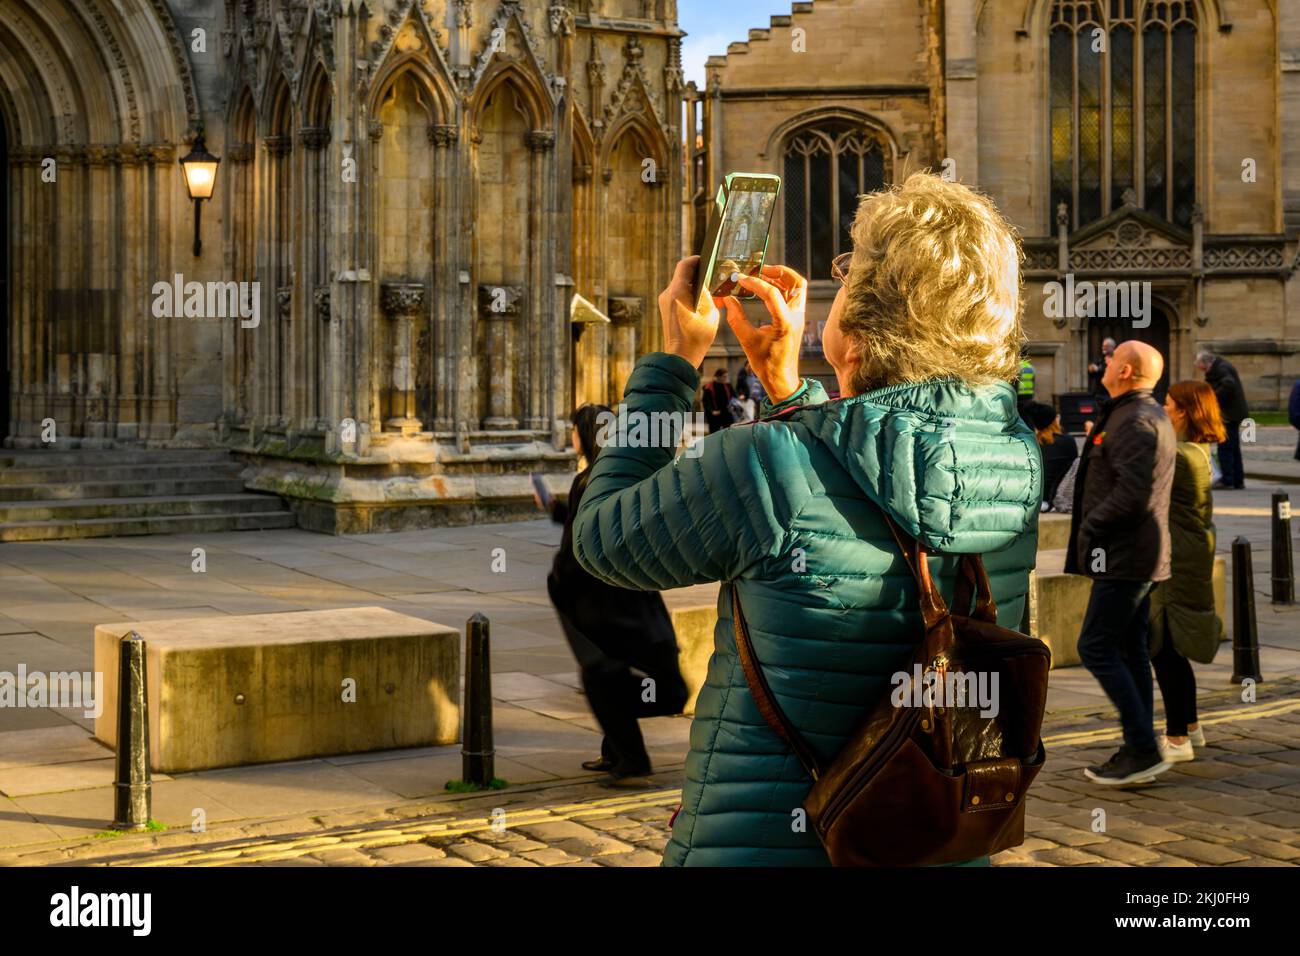 Personne utilisant l'appareil photo du téléphone portable (photo de la nouvelle statue Elizabeth 2 sur une niche et visiteurs debout) - York Minster West front, North Yorkshire, Angleterre Royaume-Uni. Banque D'Images